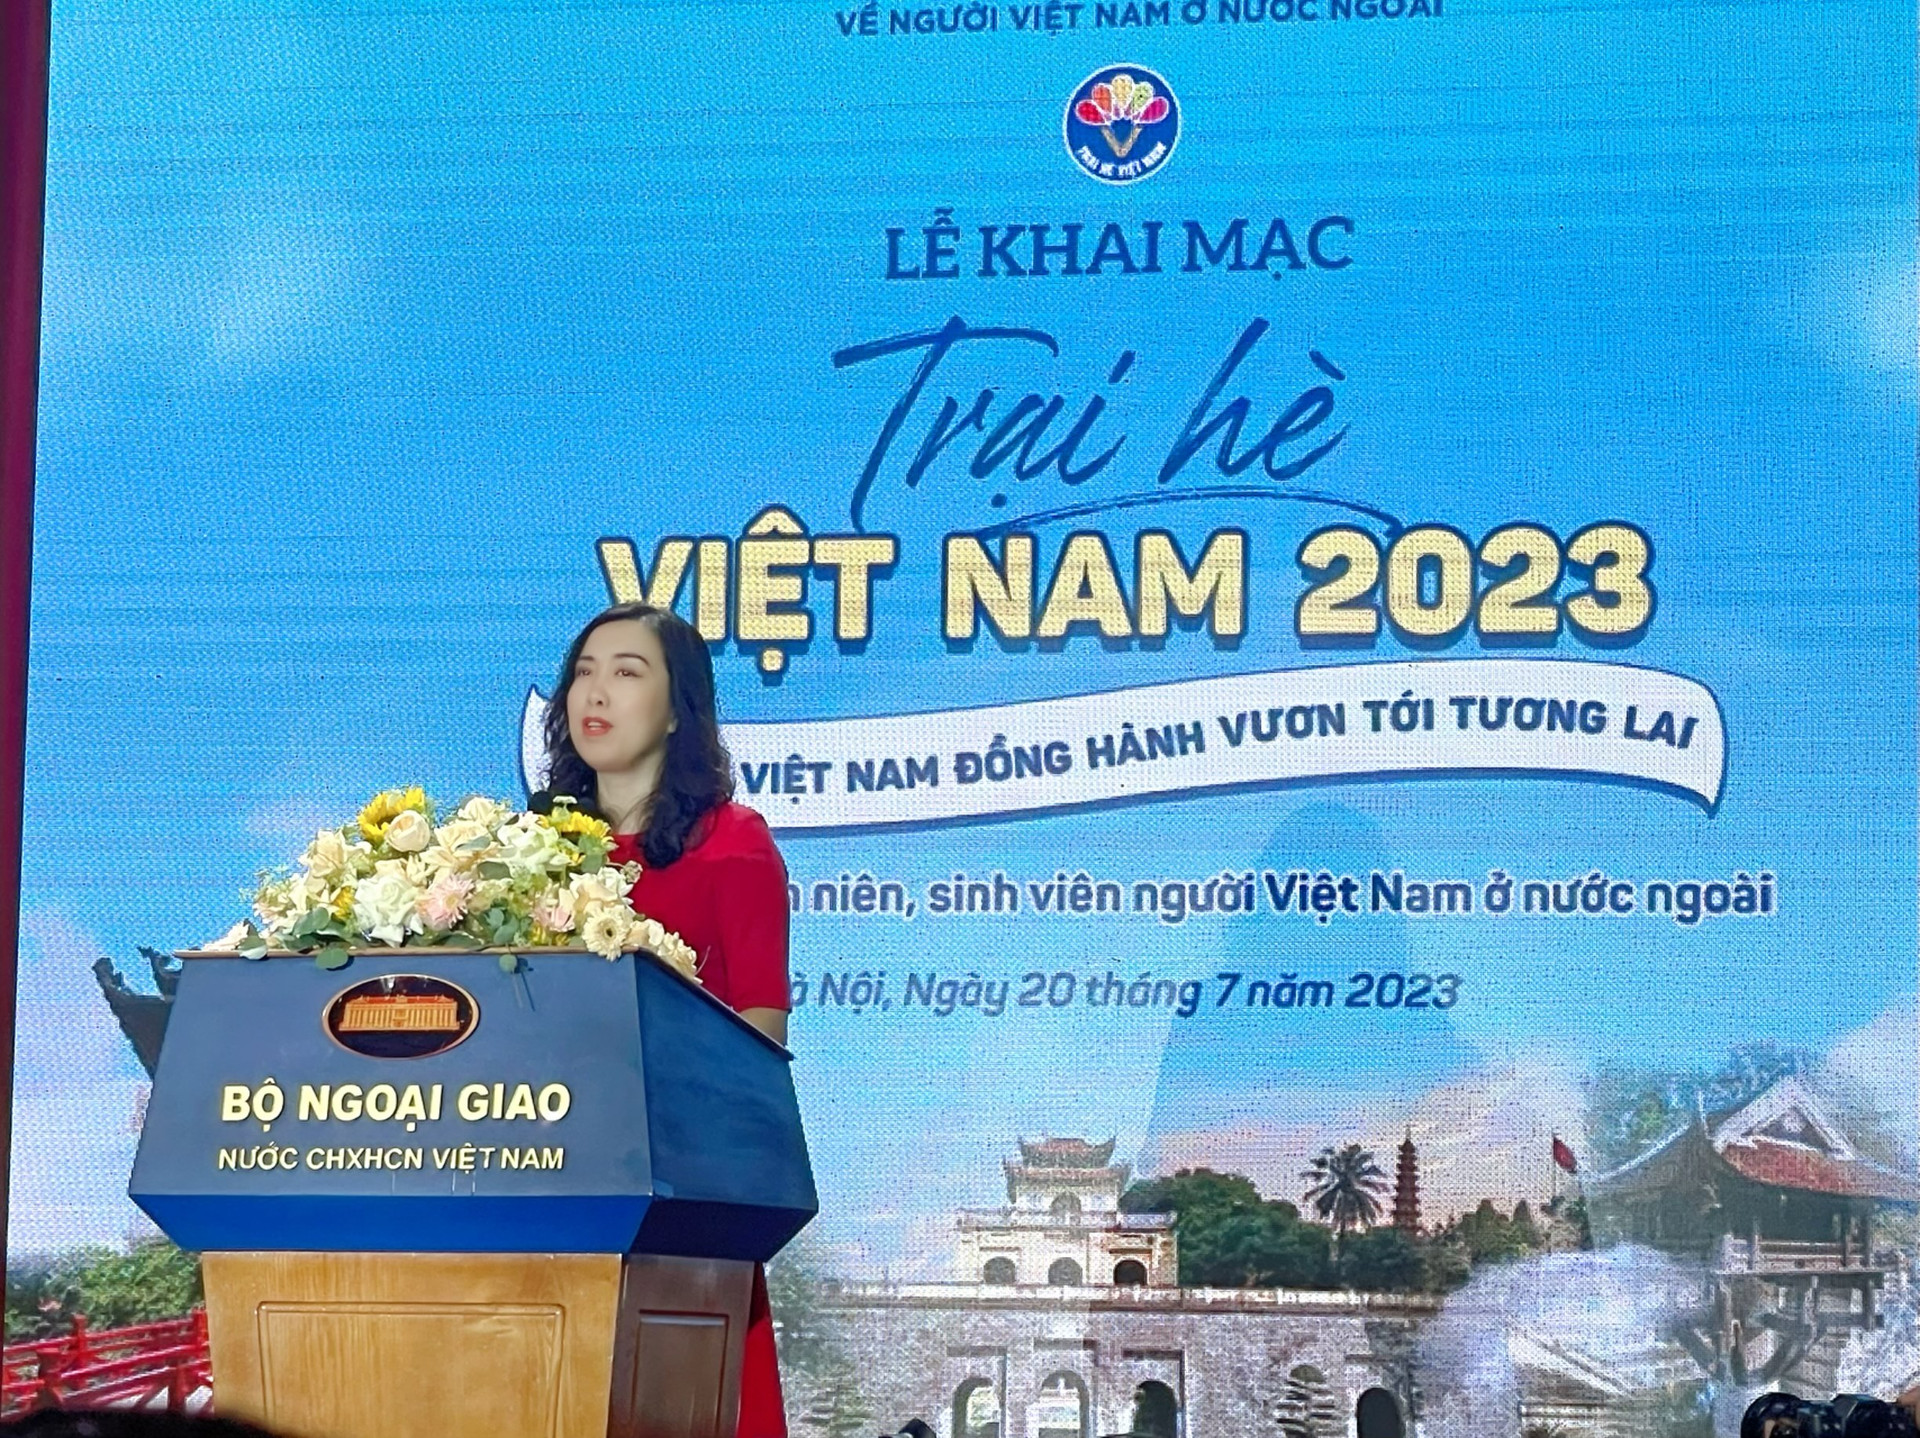 Bà Lê Thị Thu Hằng, Thứ trưởng Bộ Ngoại giao, Chủ nhiệm Ủy ban Nhà nước về NVNONN phát biểu tại buổi lễ.